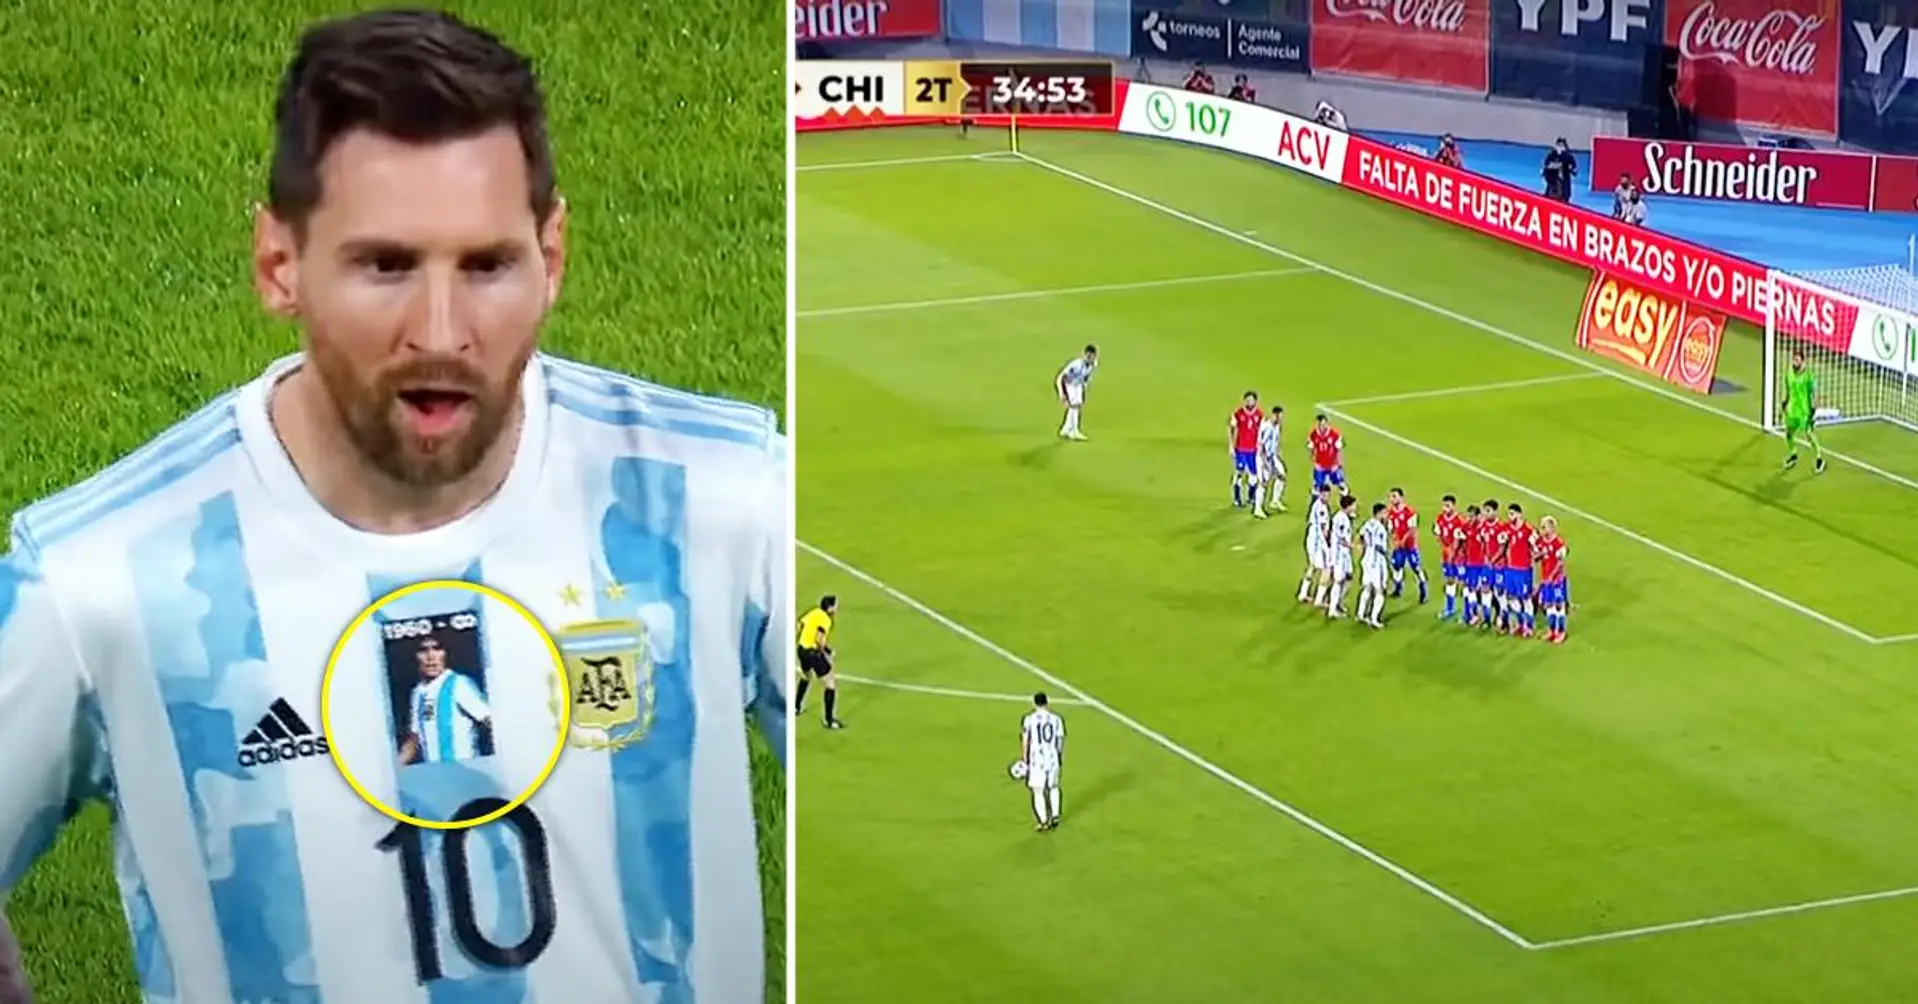 Lionel Messi "réalise une masterclass" contre le Chili avec le portrait de Diego Maradona sur son maillot